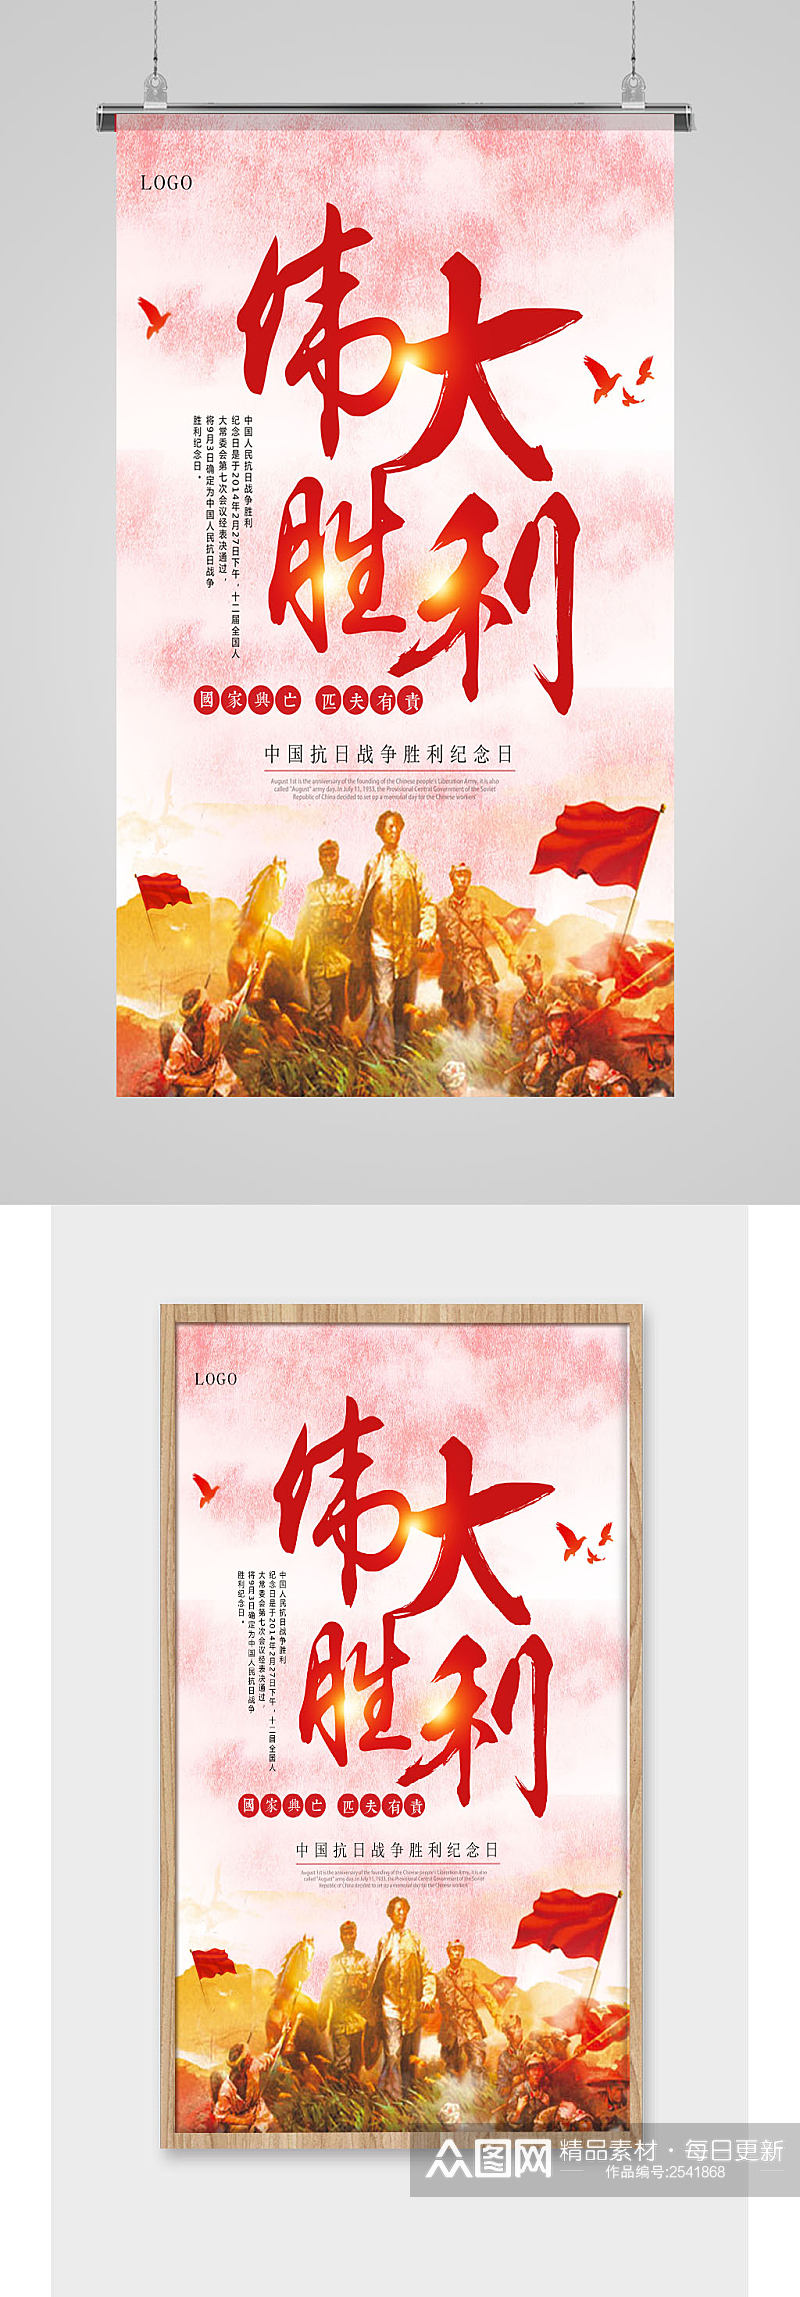 中国抗战胜利纪念日伟大胜利海报素材